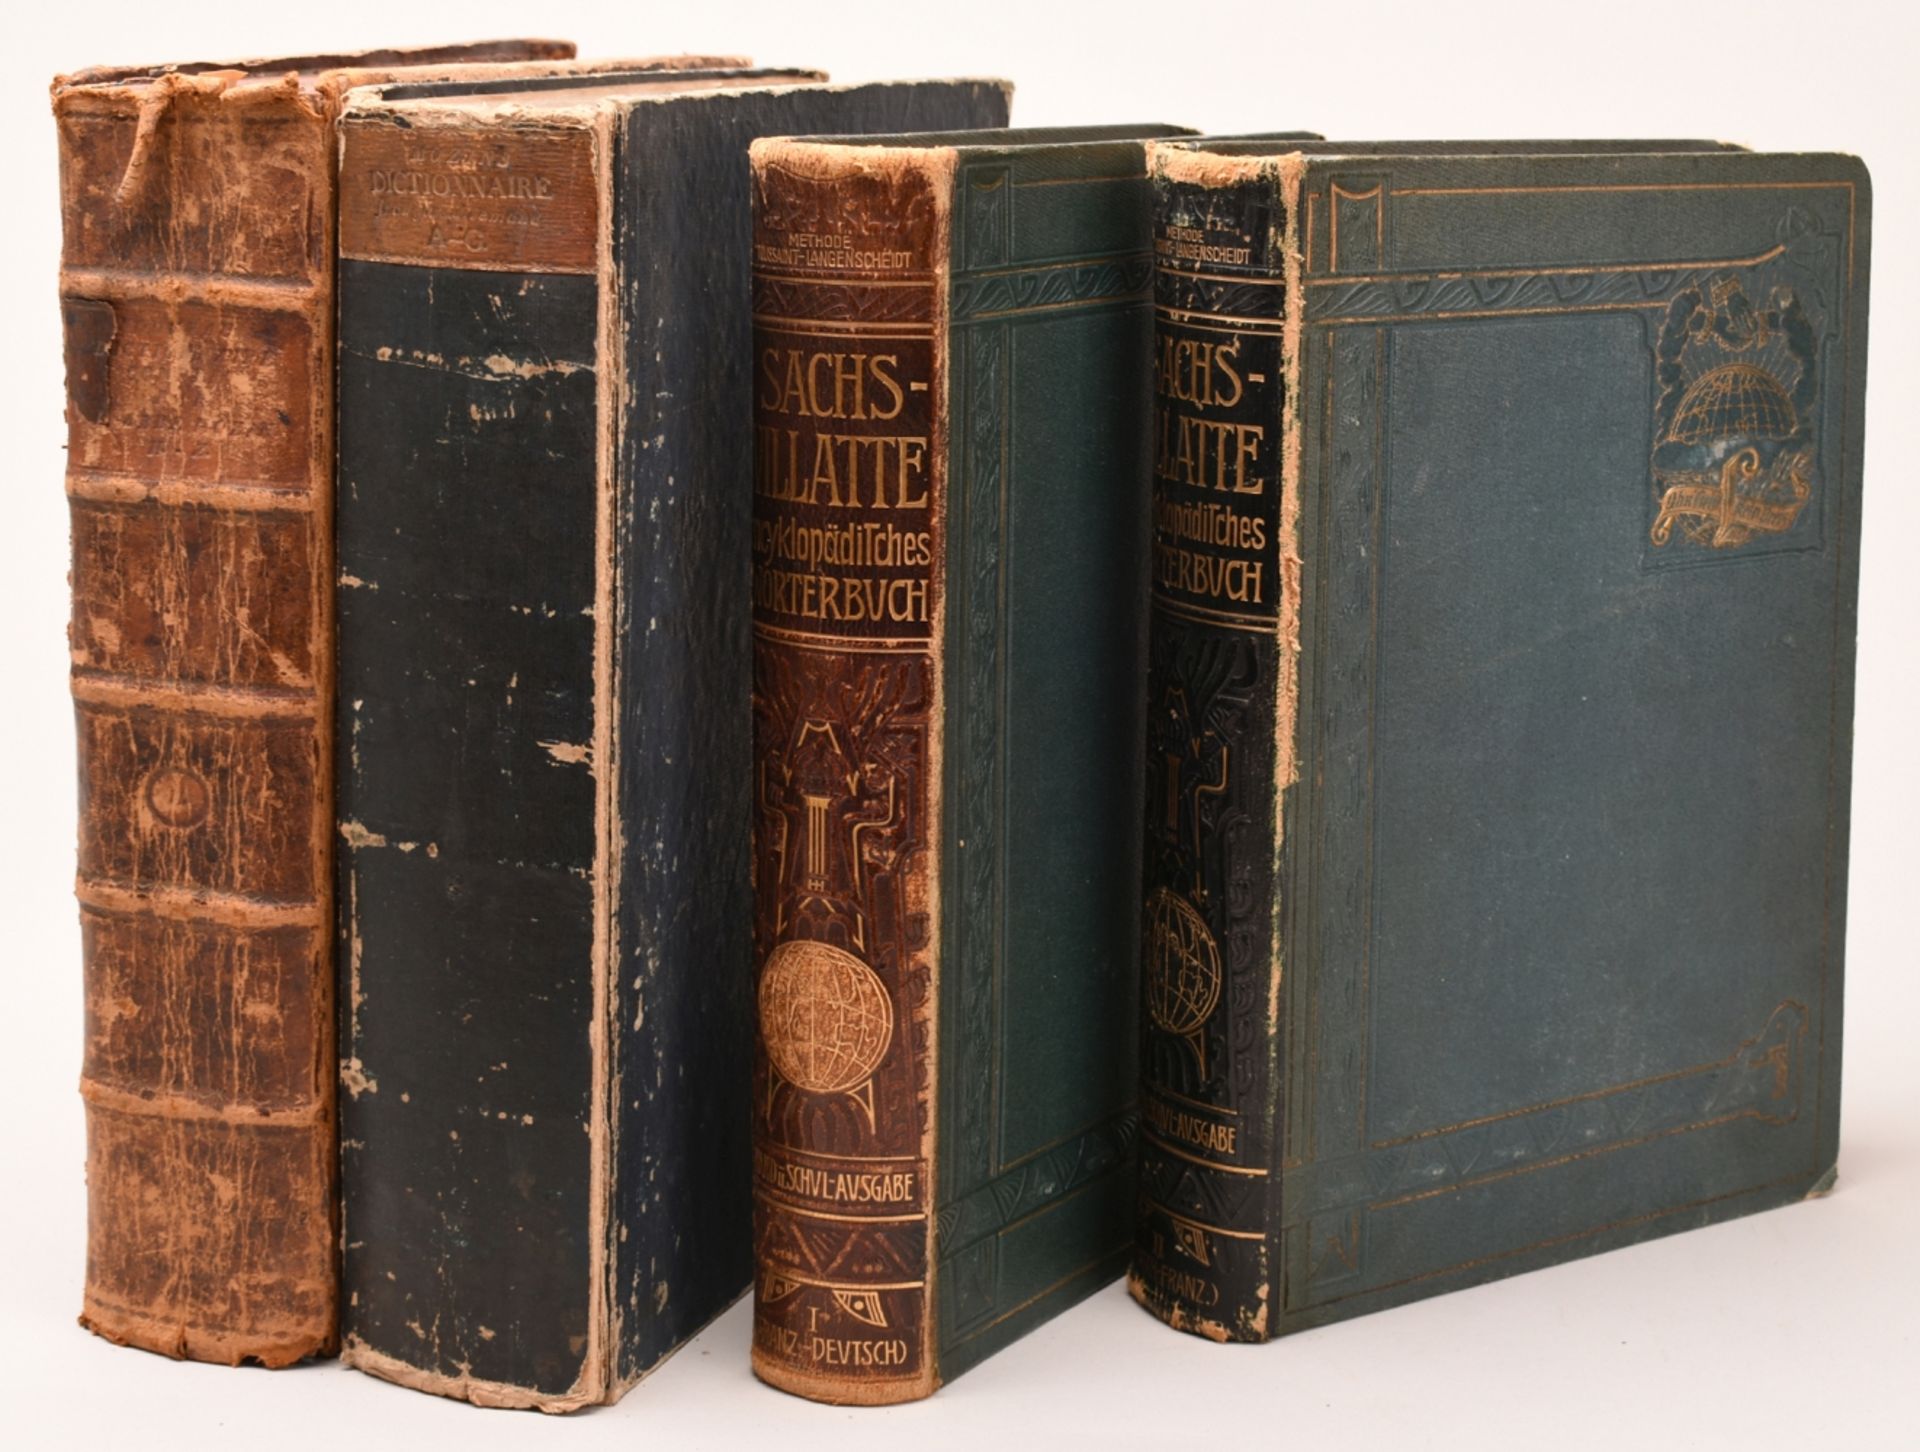 Historische Wörterbücher 1811-12 / 1900 - Bild 2 aus 2